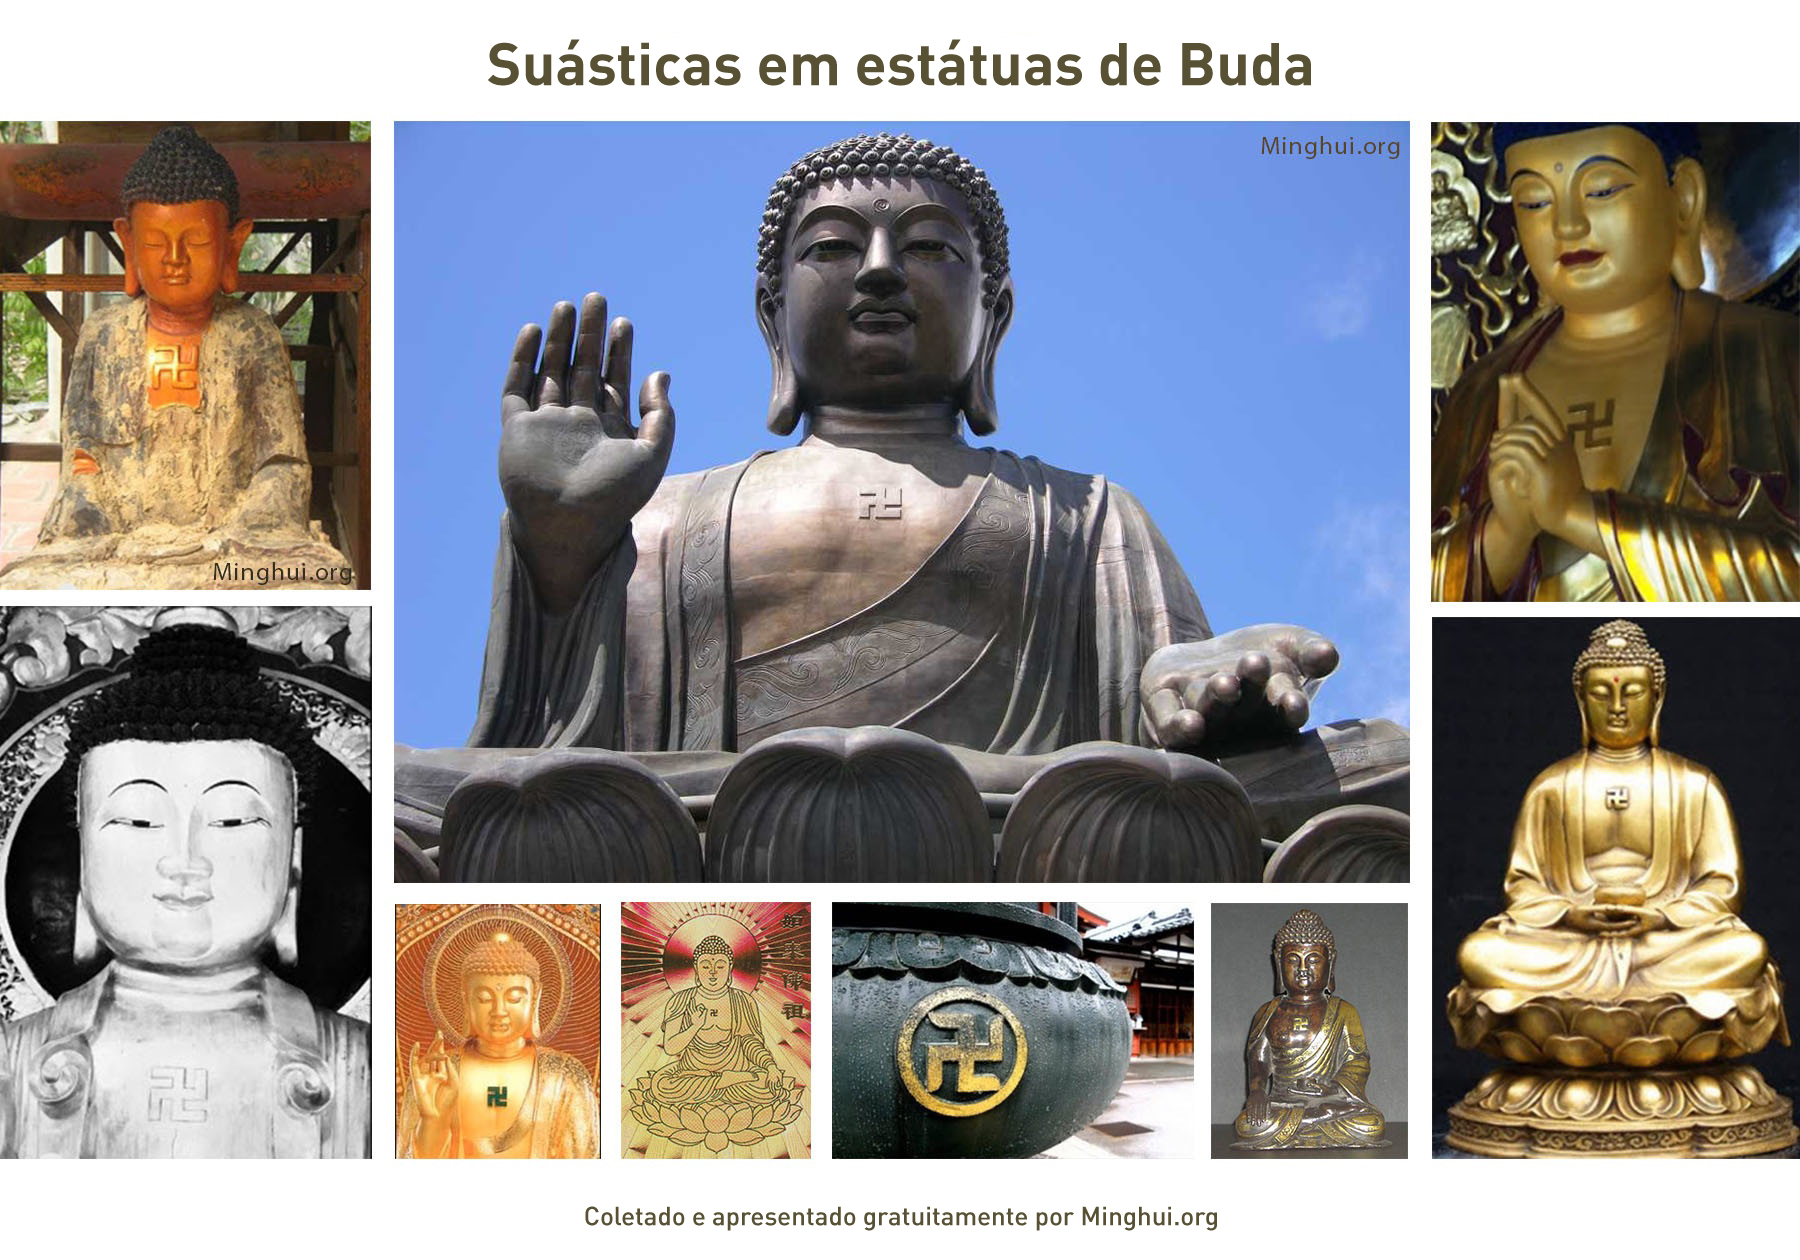 Image for article Suásticas em estátuas de Buda